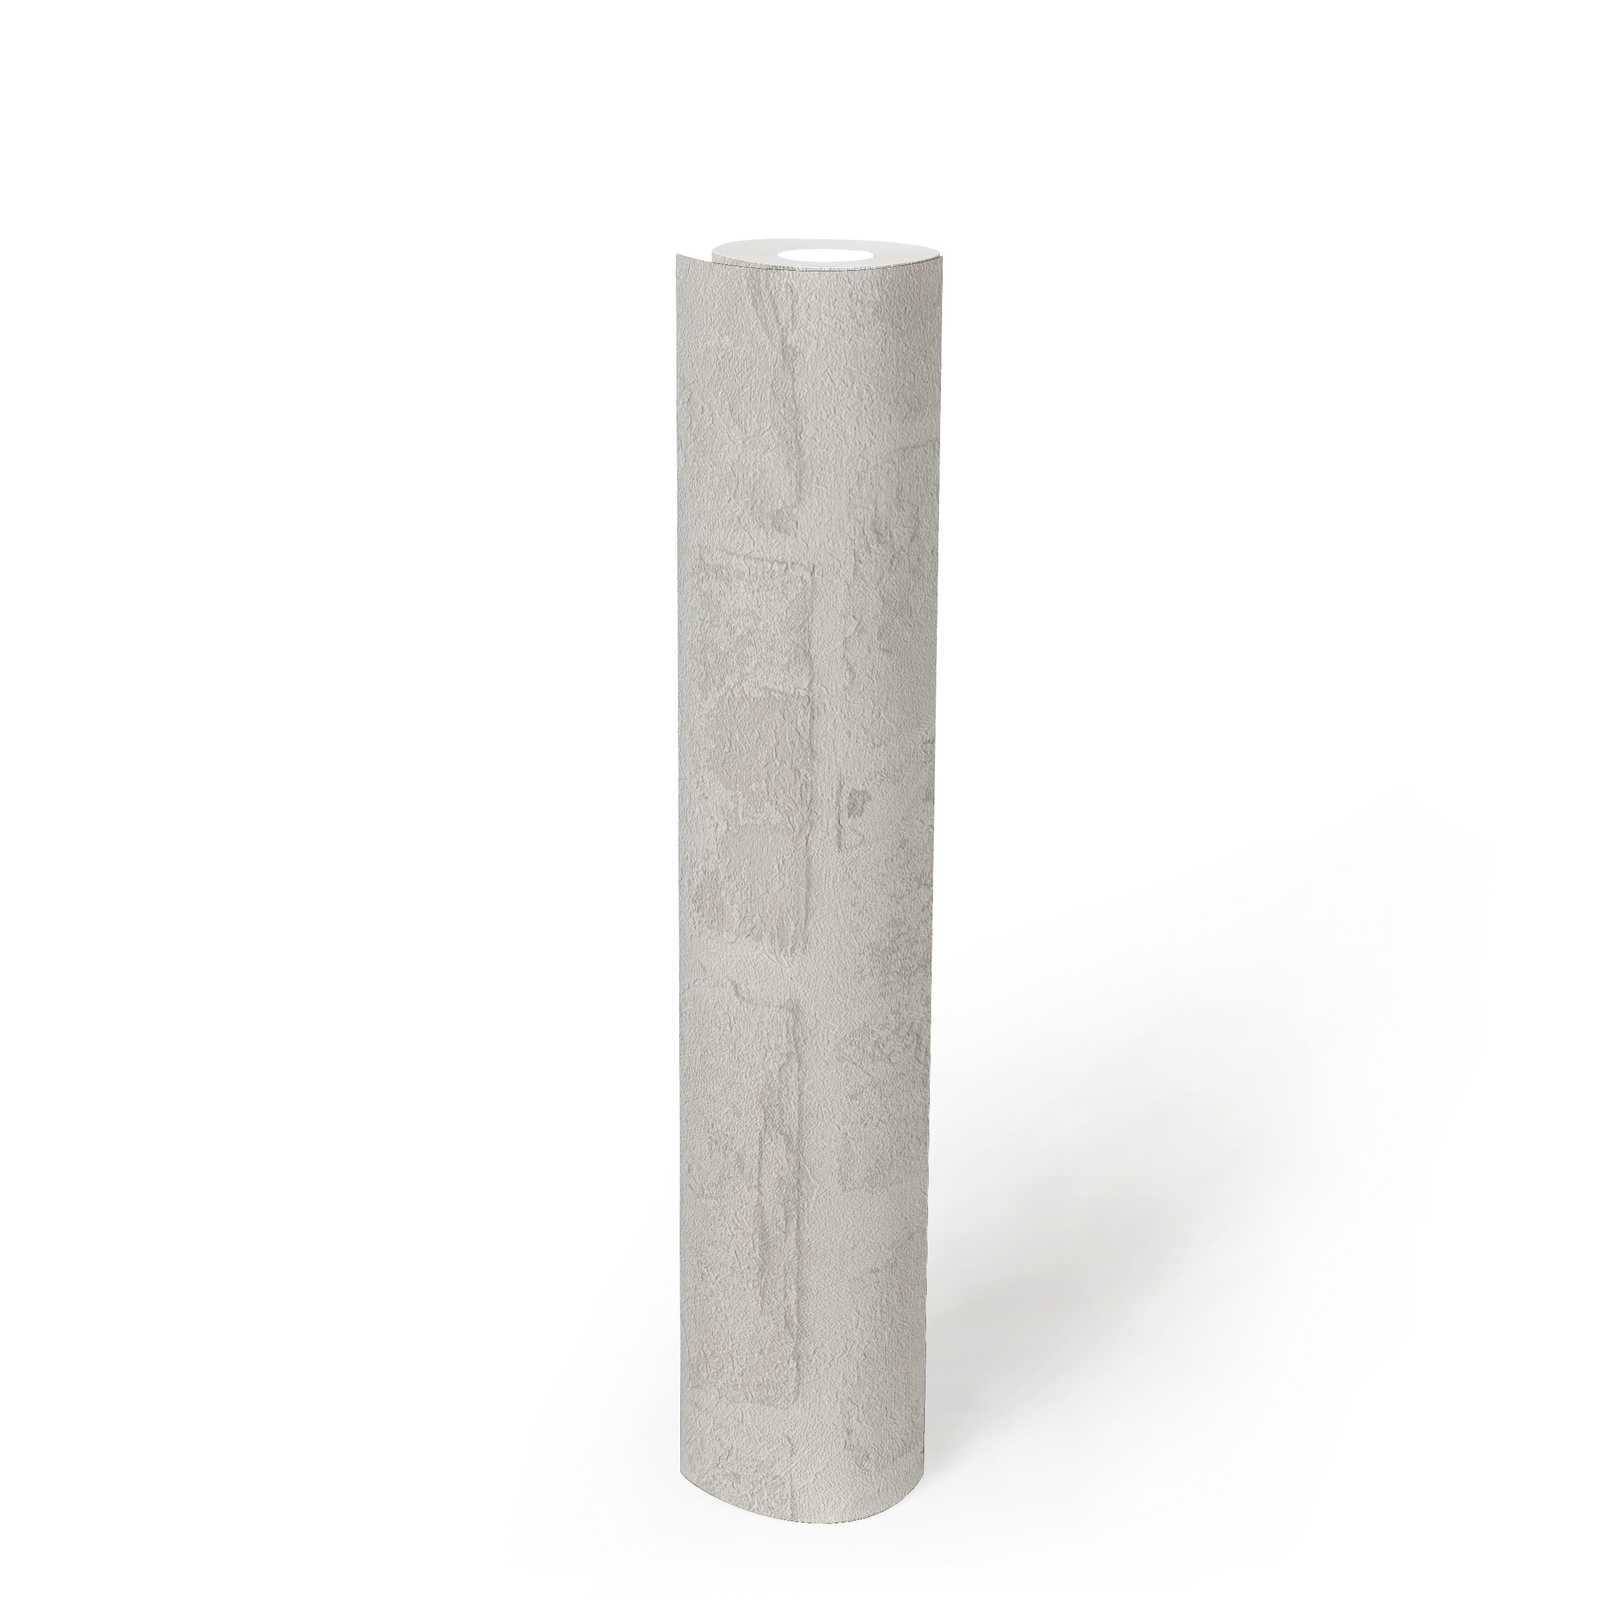             PVC-free stone look non-woven wallpaper - white, grey
        